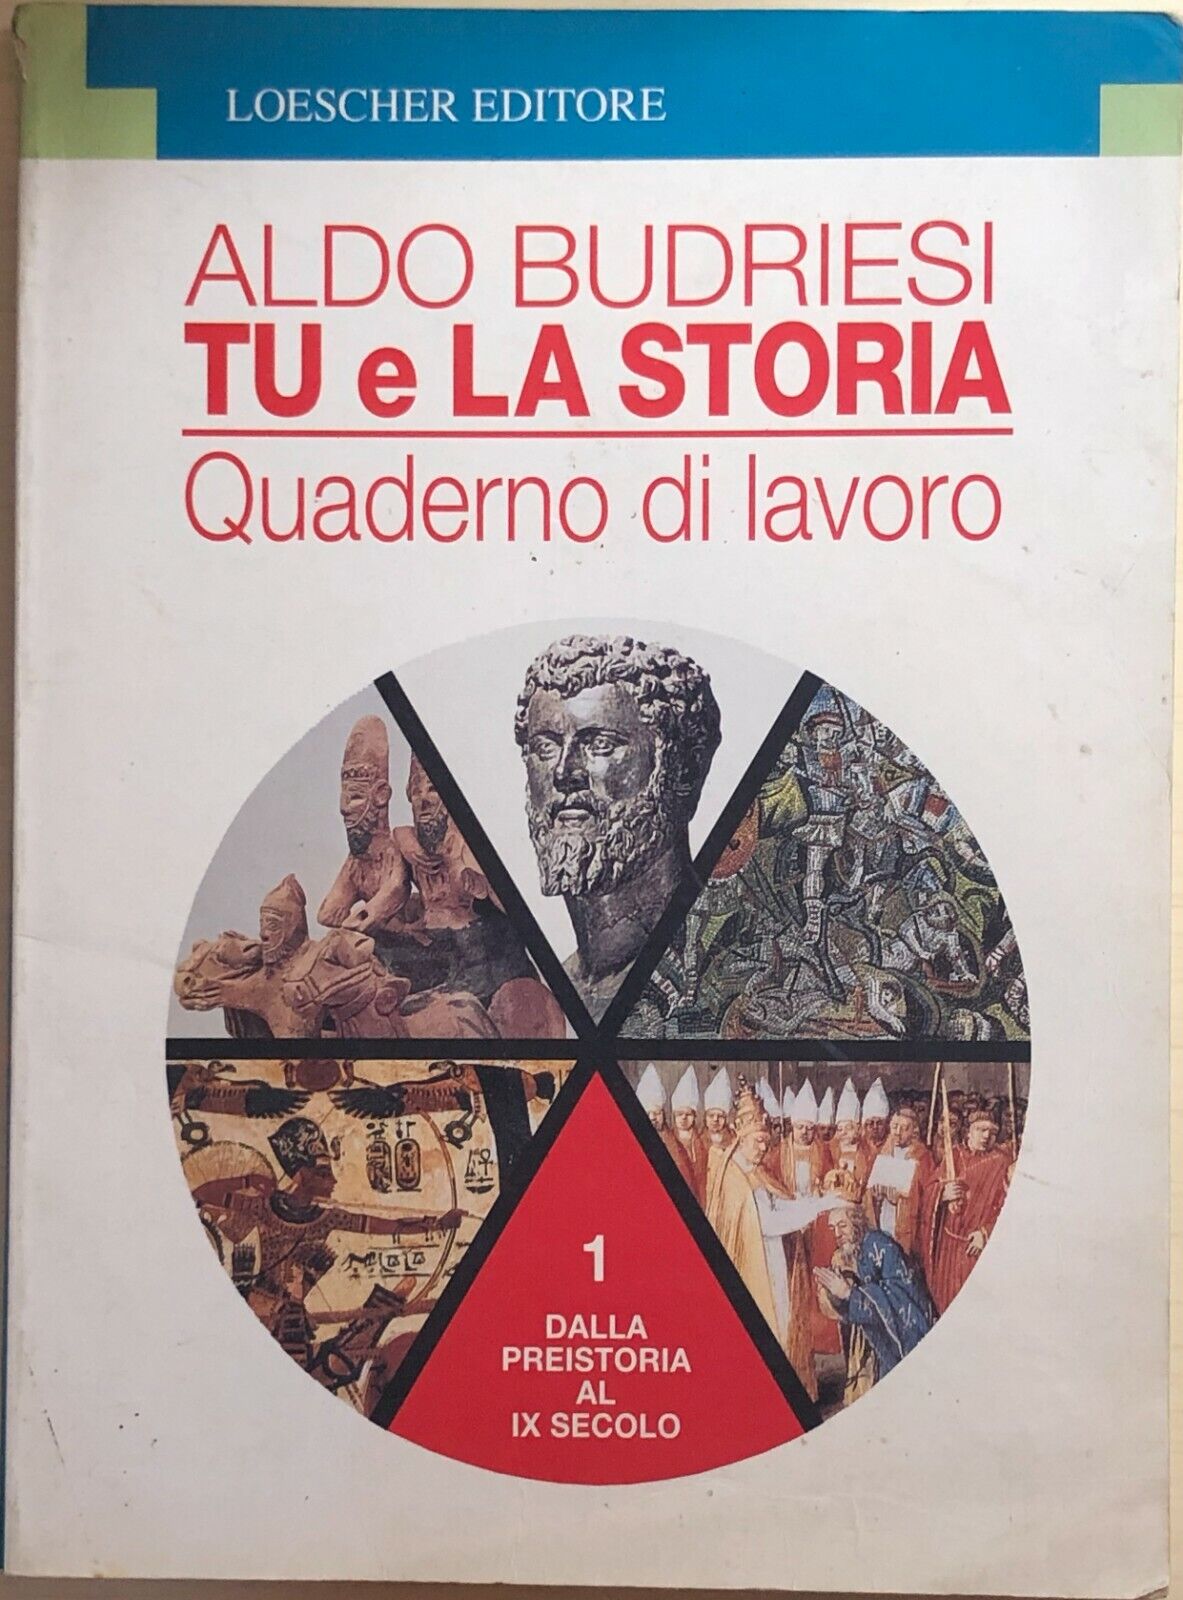 Tu e la storia 1, quaderno di lavoro  di Aldo Budriesi, 1995, Loescher Editore